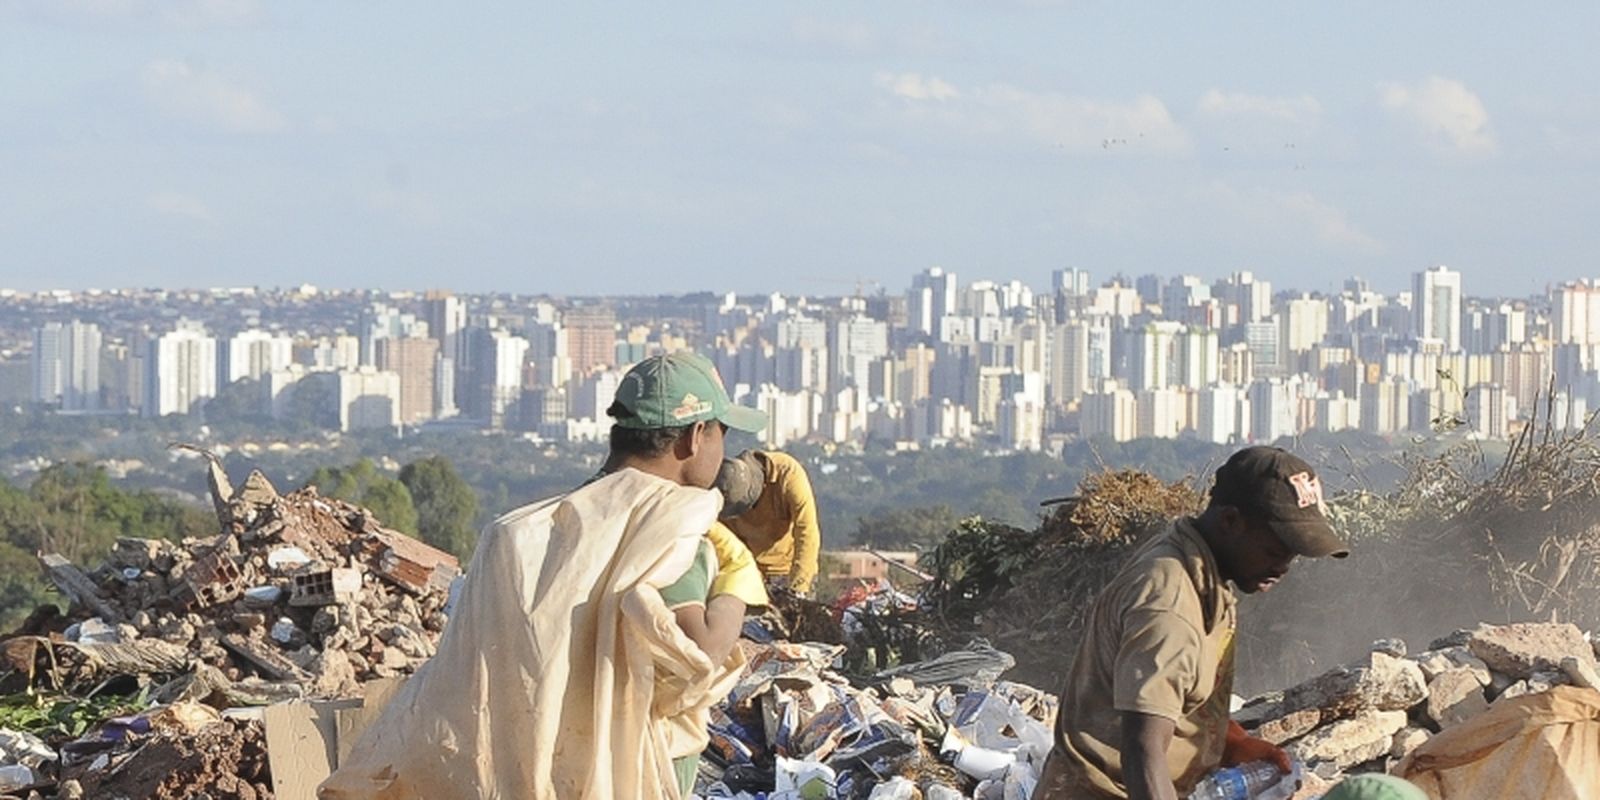 Geração de lixo no mundo pode chegar a 3,8 bi de toneladas em 2050